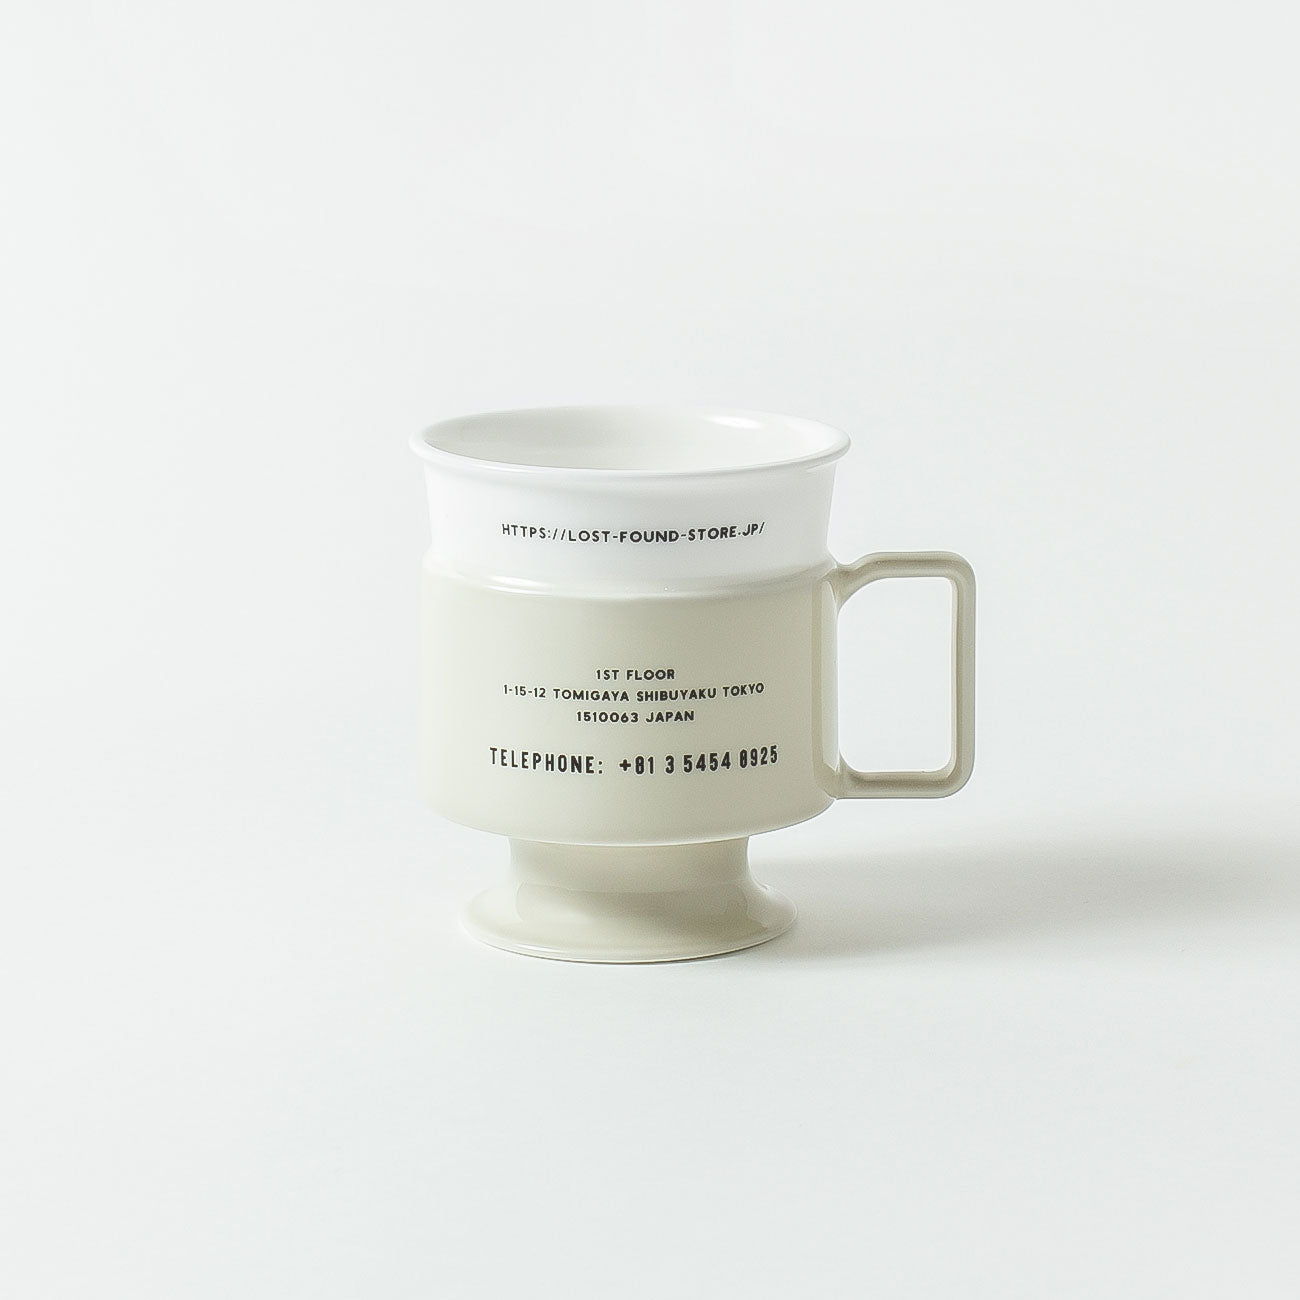 NIKKO(ニッコー) #Single Use Planet Cup グレージュ | Lost and Found コップ 食器 #Sup カップ ニッコーの白いコップ ファインボーンチャイナ 日本製陶磁器